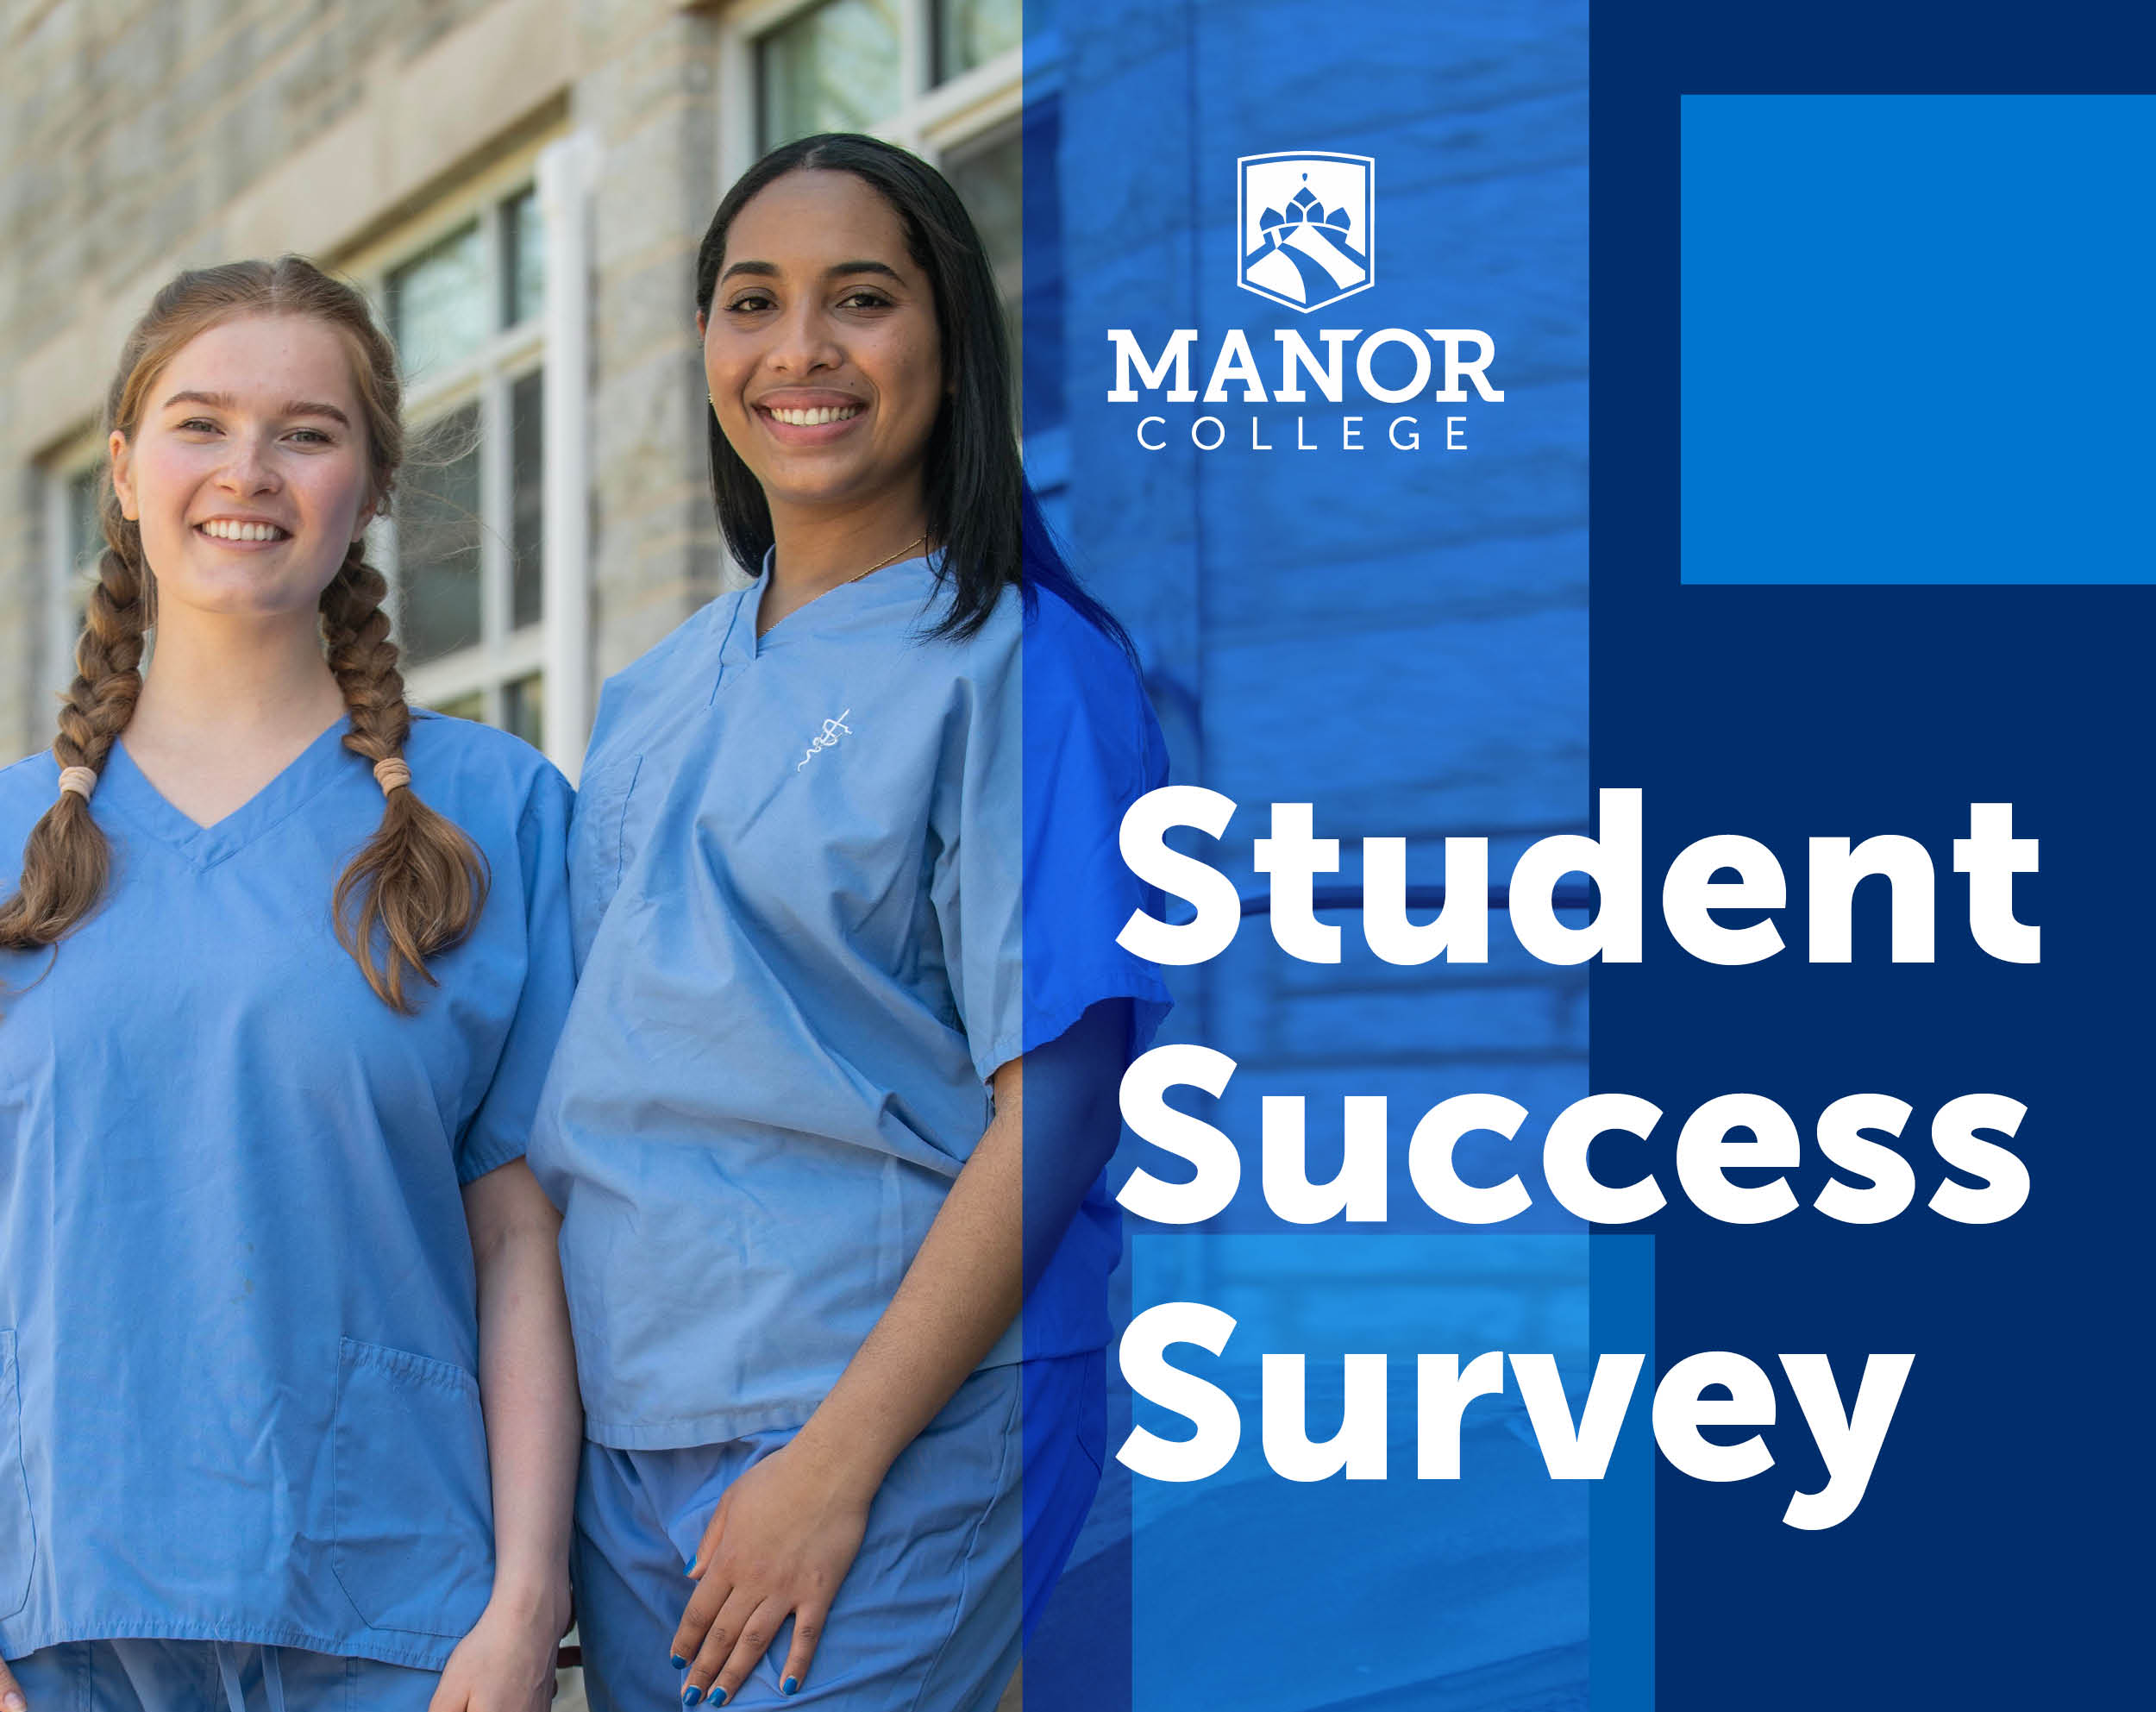 Student Success Survey image